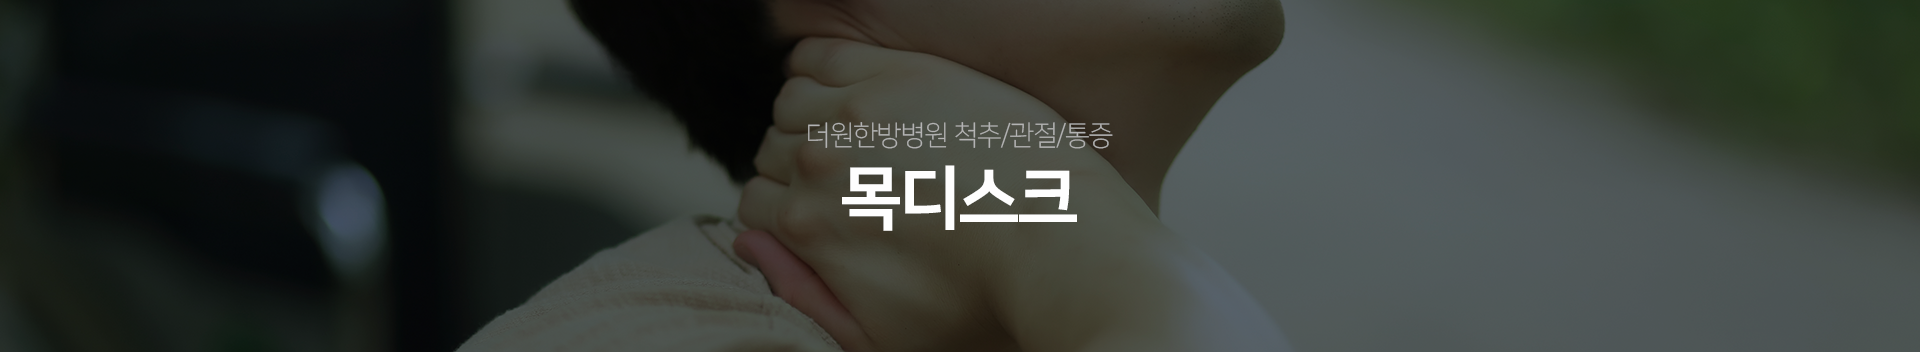 더원한방병원-척추/관절/통증-목디스크